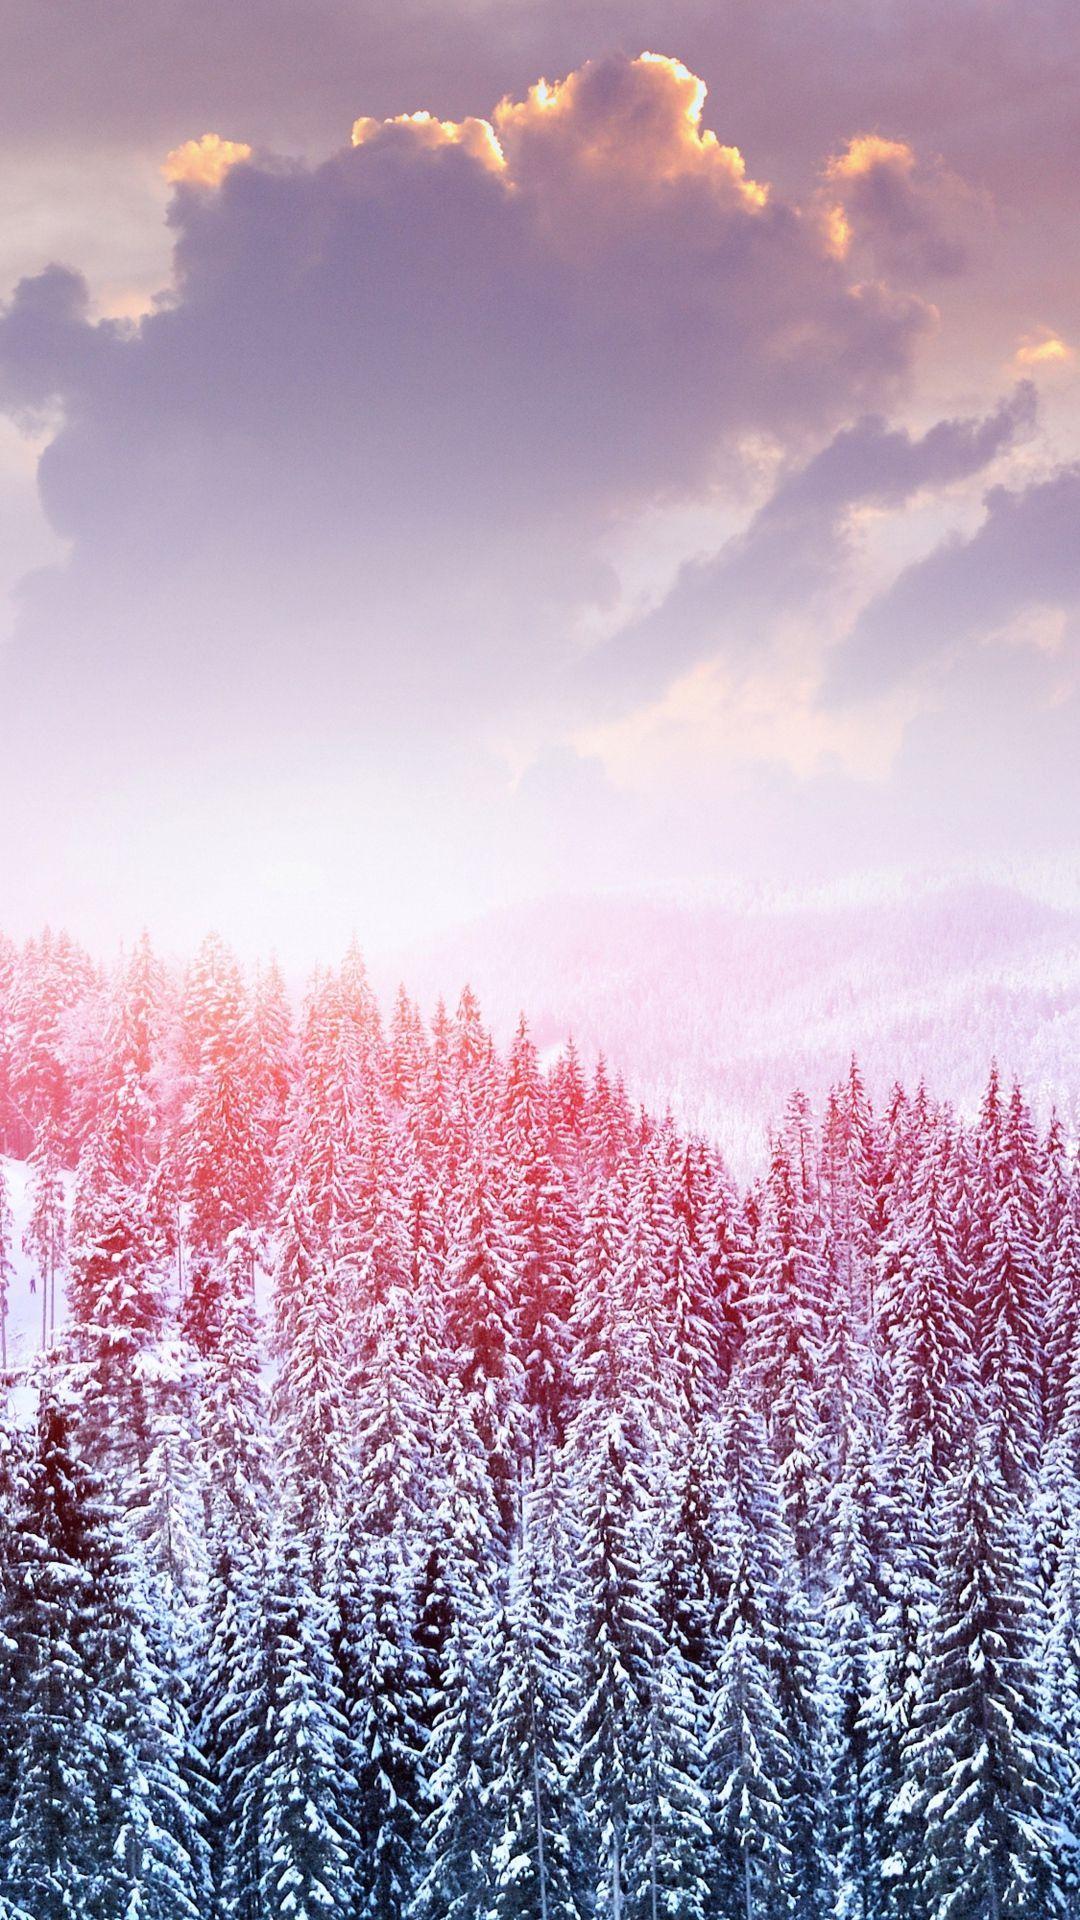 60814 Pink Snow Wallpaper Images Stock Photos  Vectors  Shutterstock